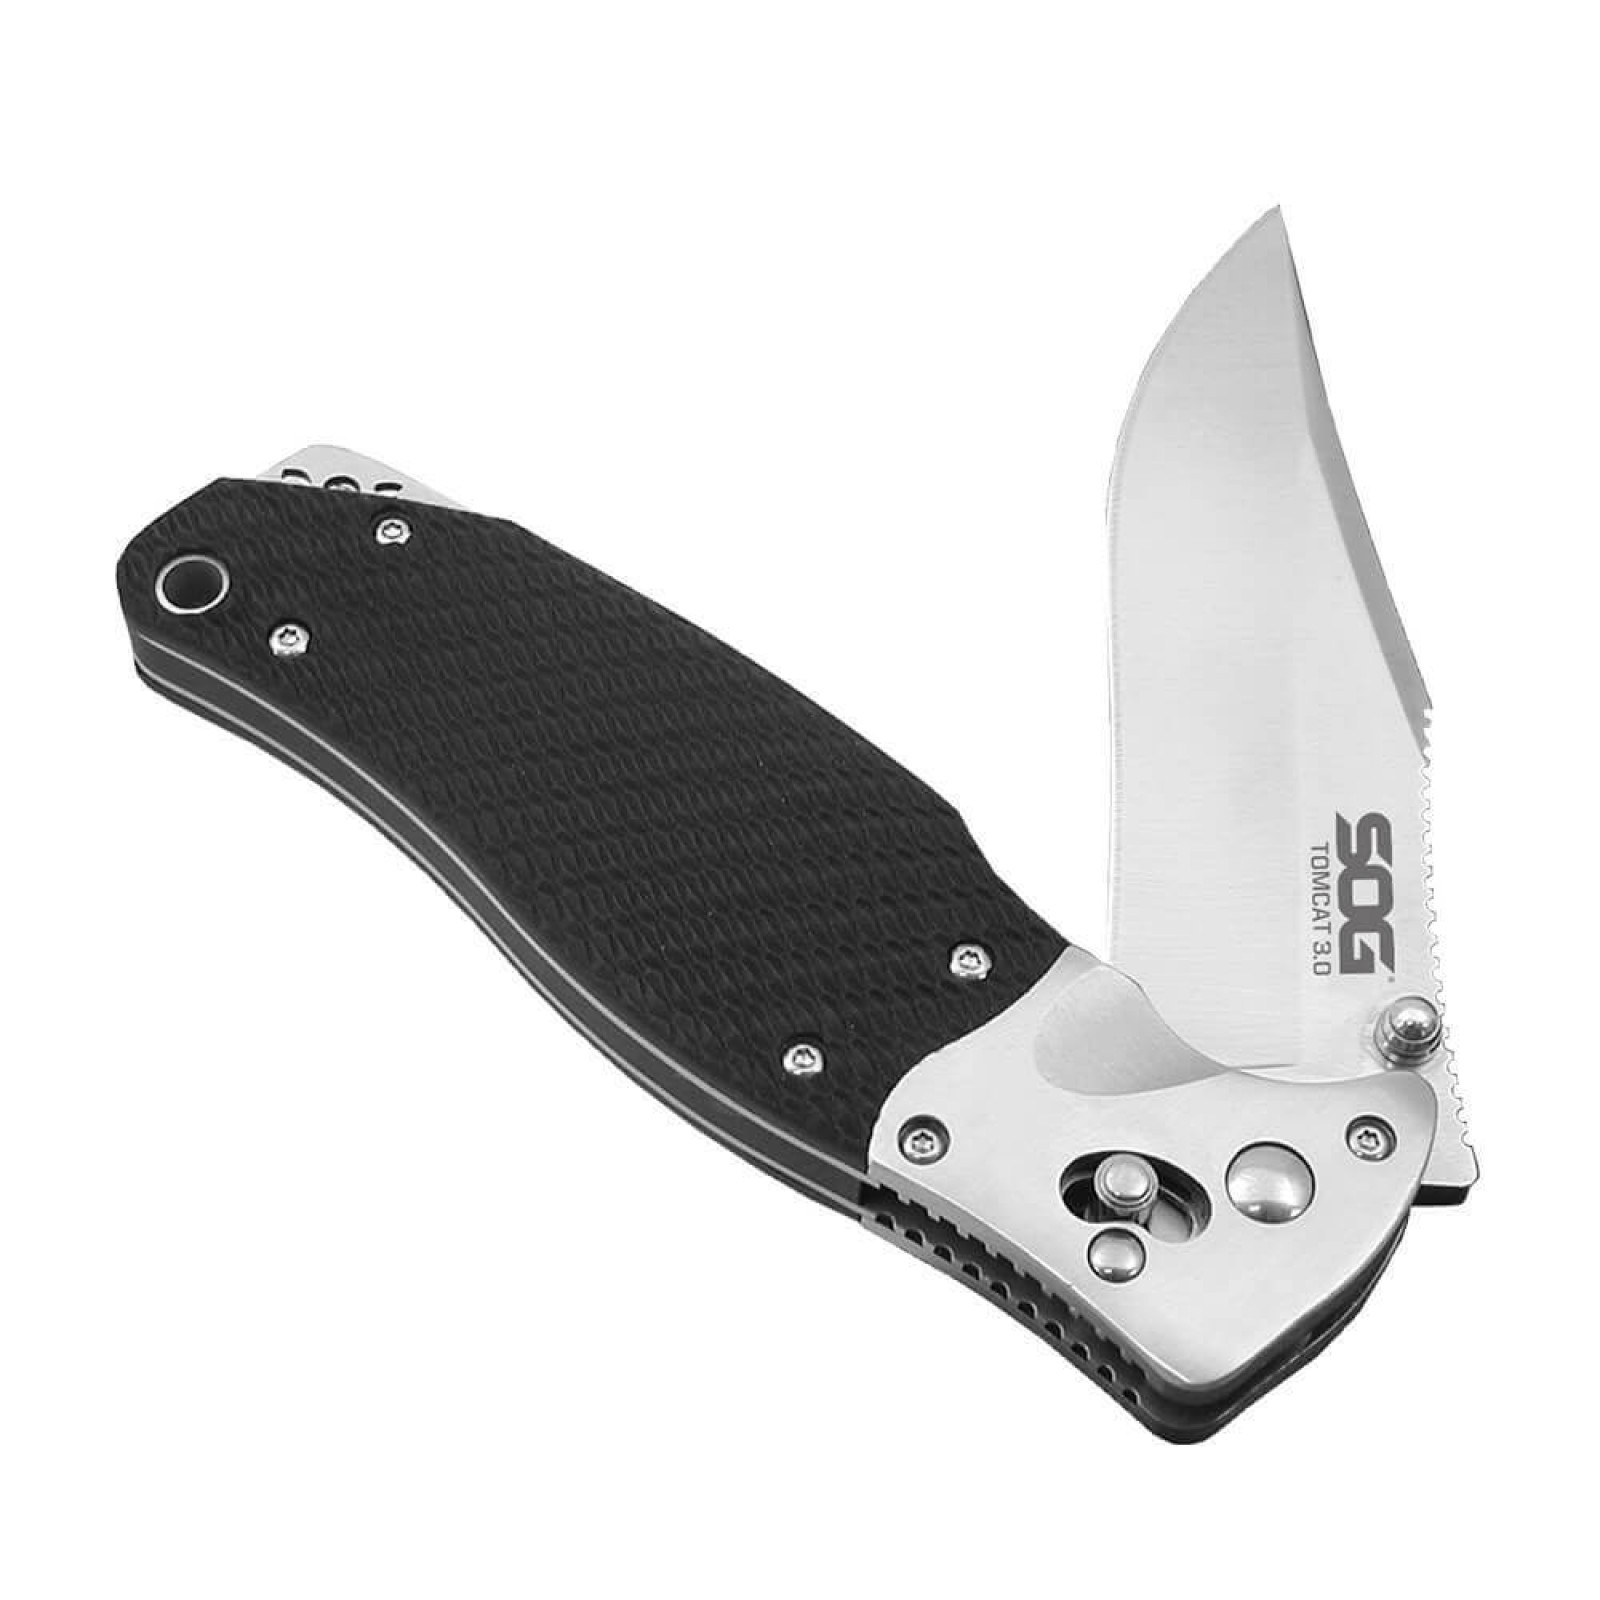 Складной нож Tomcat 3.0 - SOG S95, сталь VG-10, рукоять кратон - фото 6